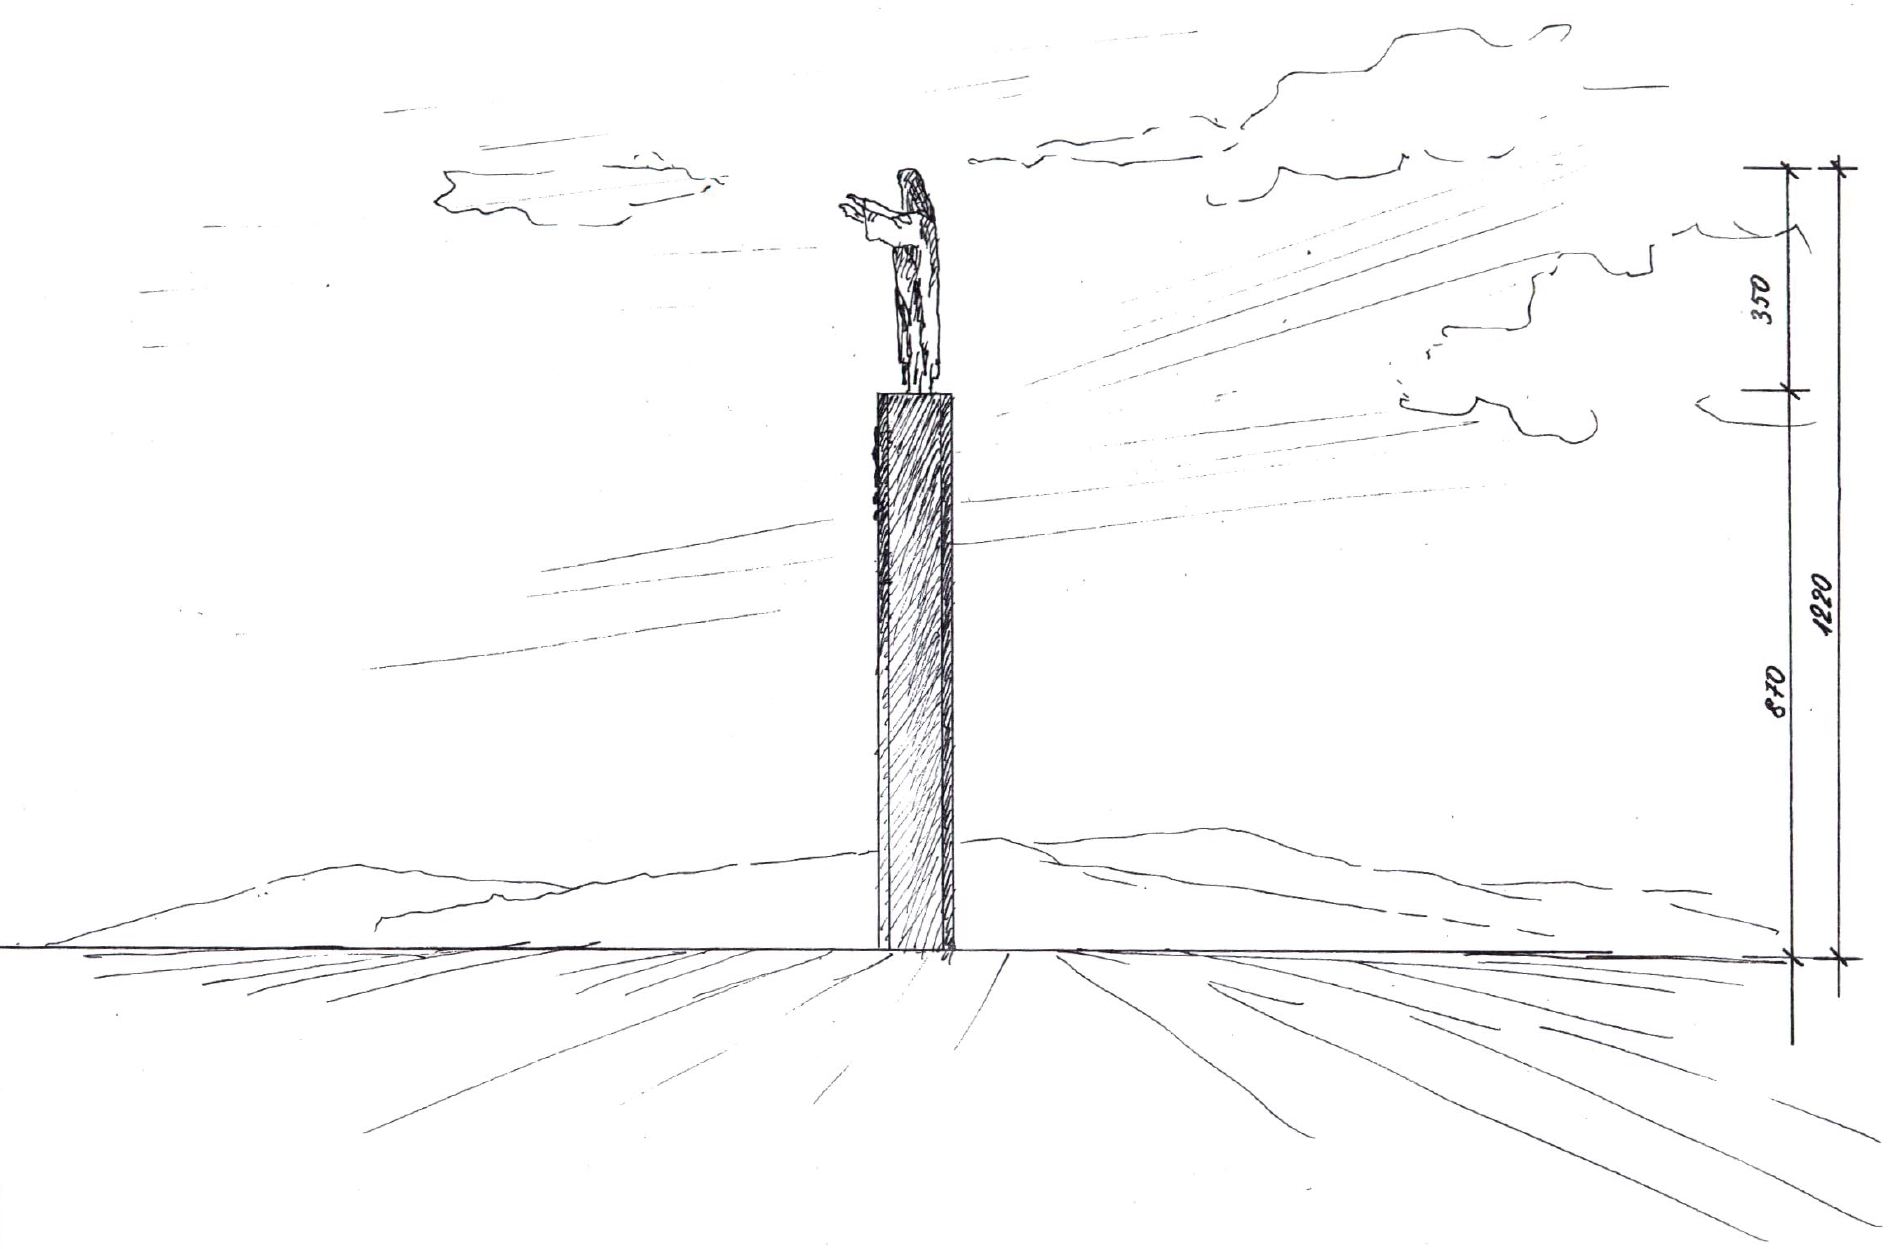 Wstępna koncepcja pomnika przedstawiona radnym miejskim.